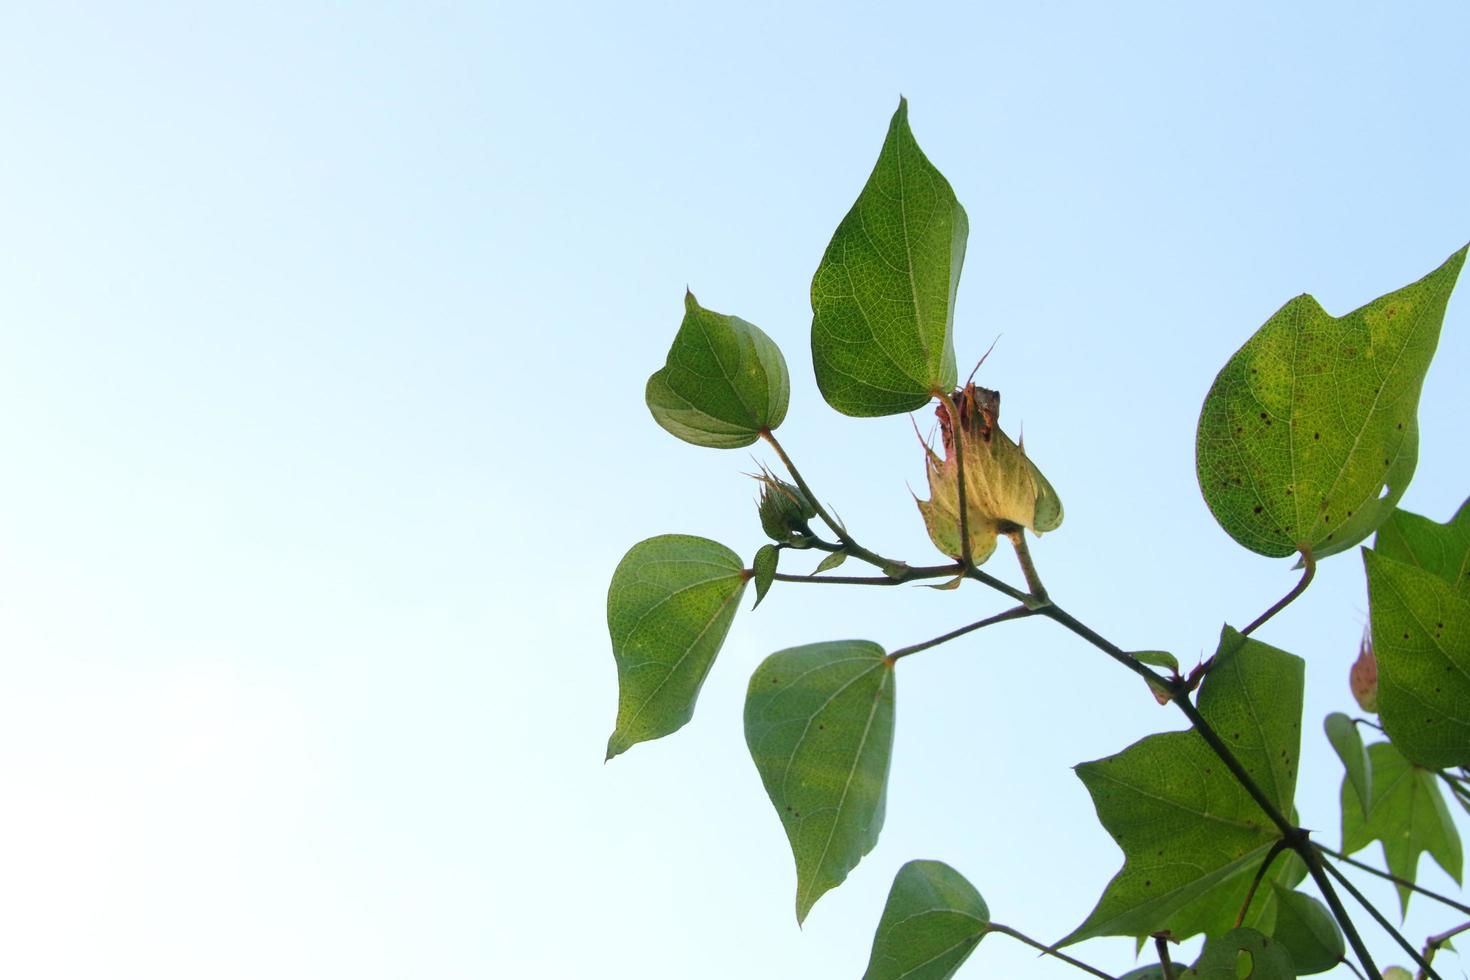 jovem flor de ceilão algodão árvore wit folhas verdes em tiro e ligh fundo do céu azul. outro nome é algodão chinês ou algodão de árvore da índia, tailândia. foto